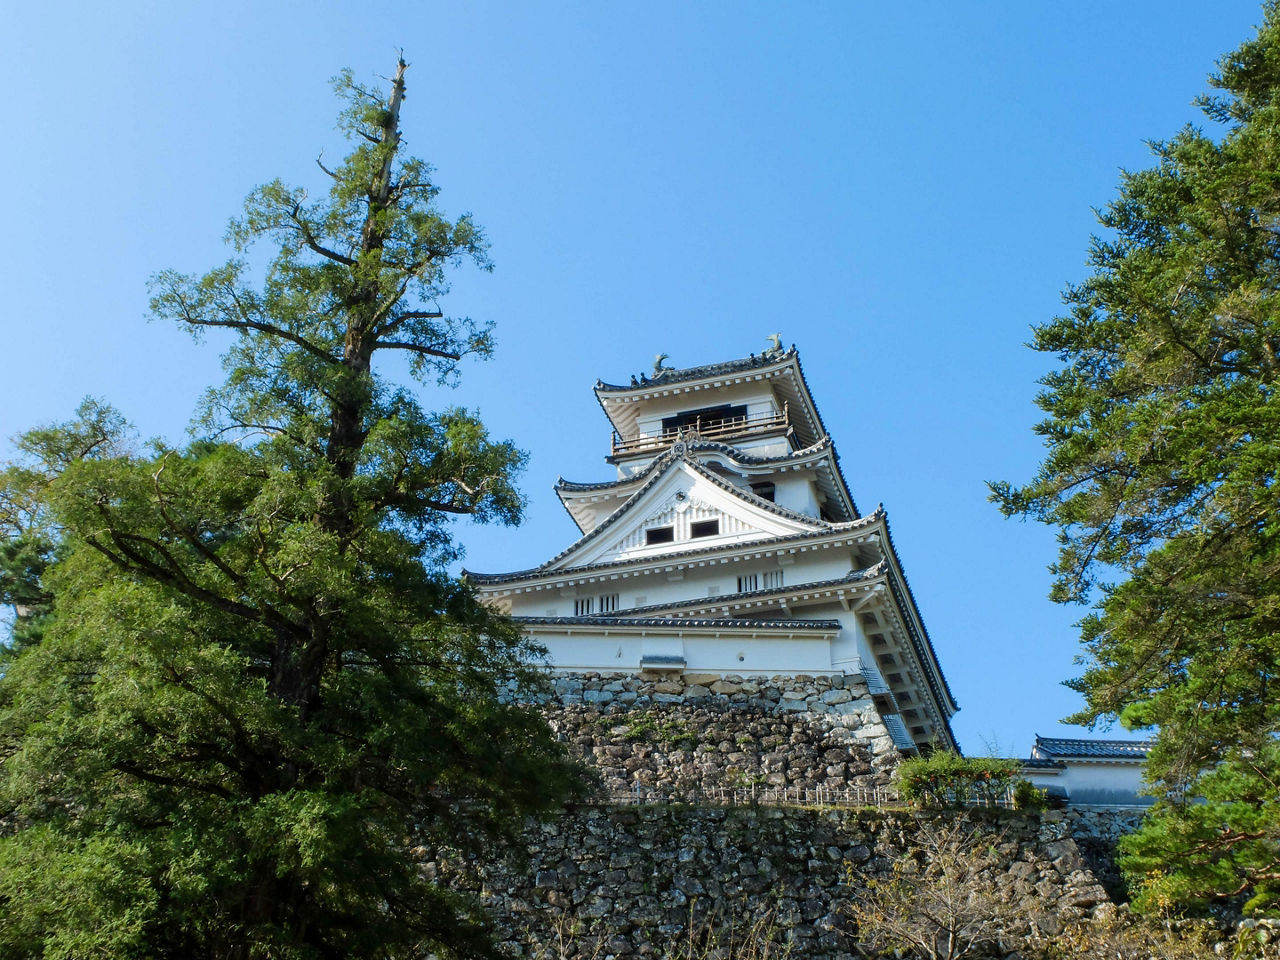 The Kochi castle in Kochi, Japan